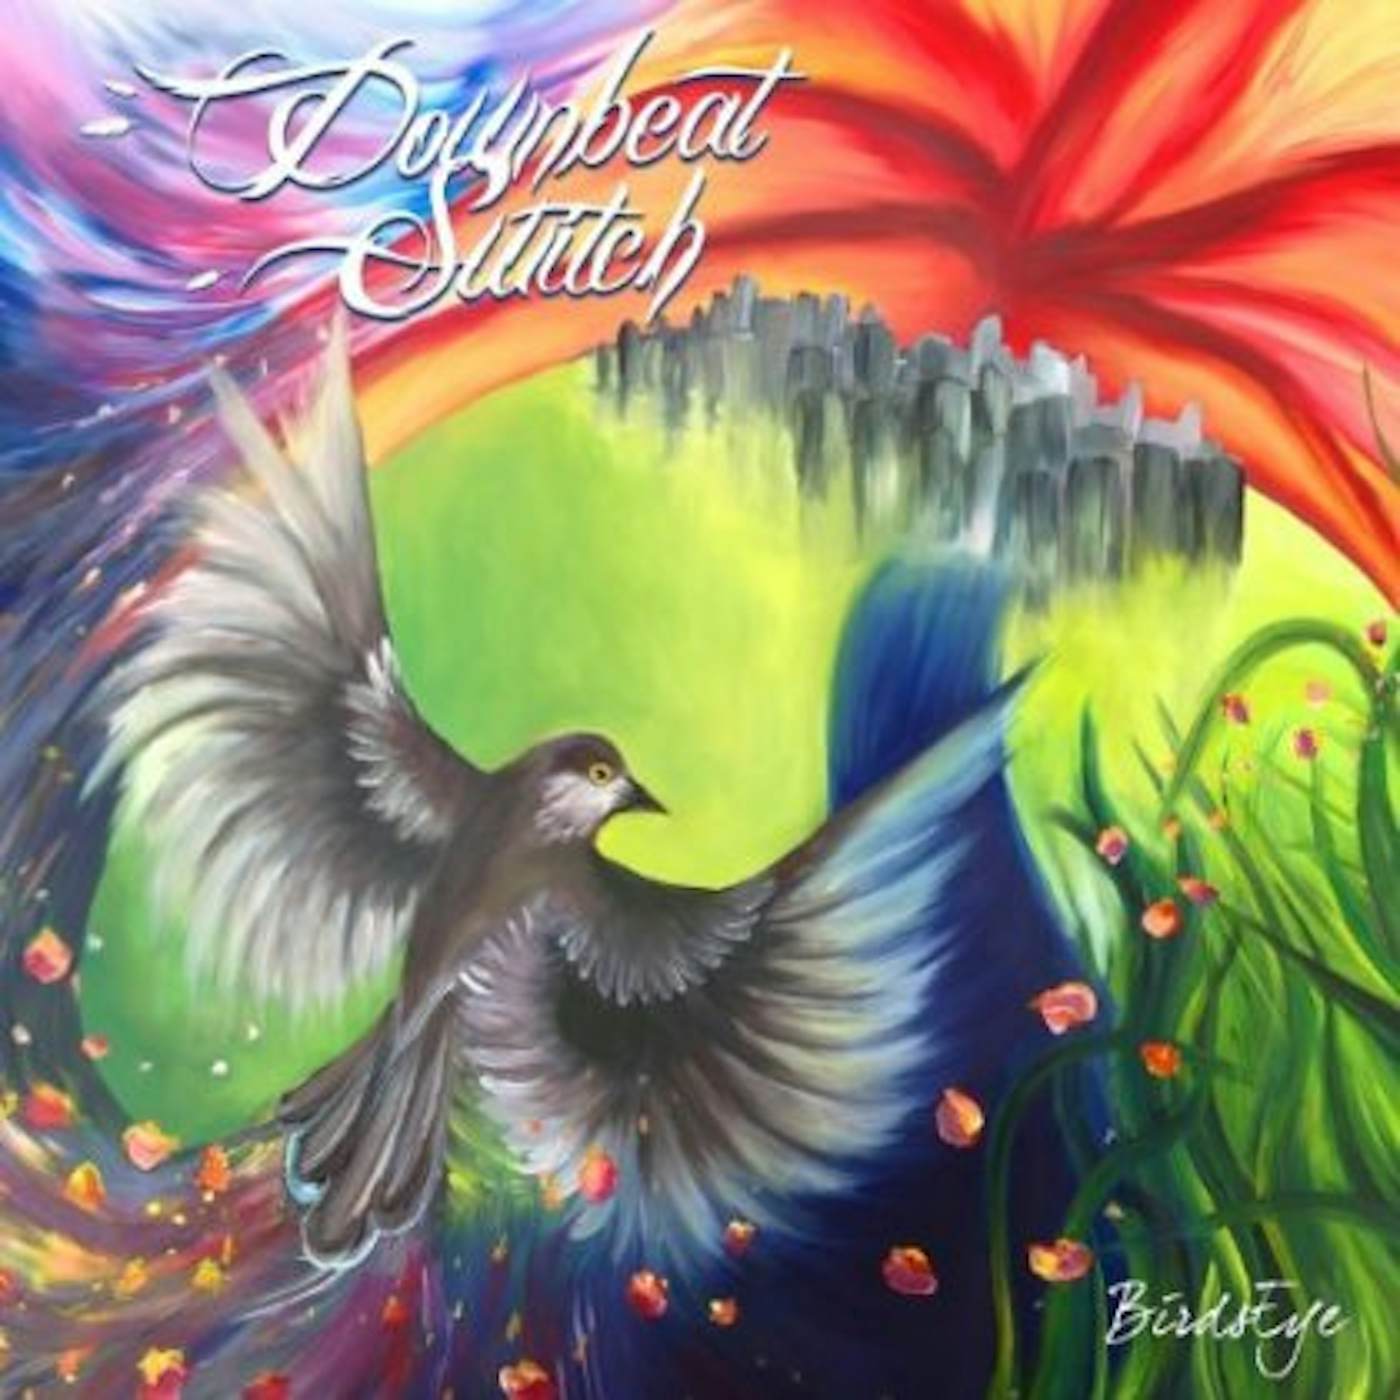 Downbeat Switch BIRDSEYE CD